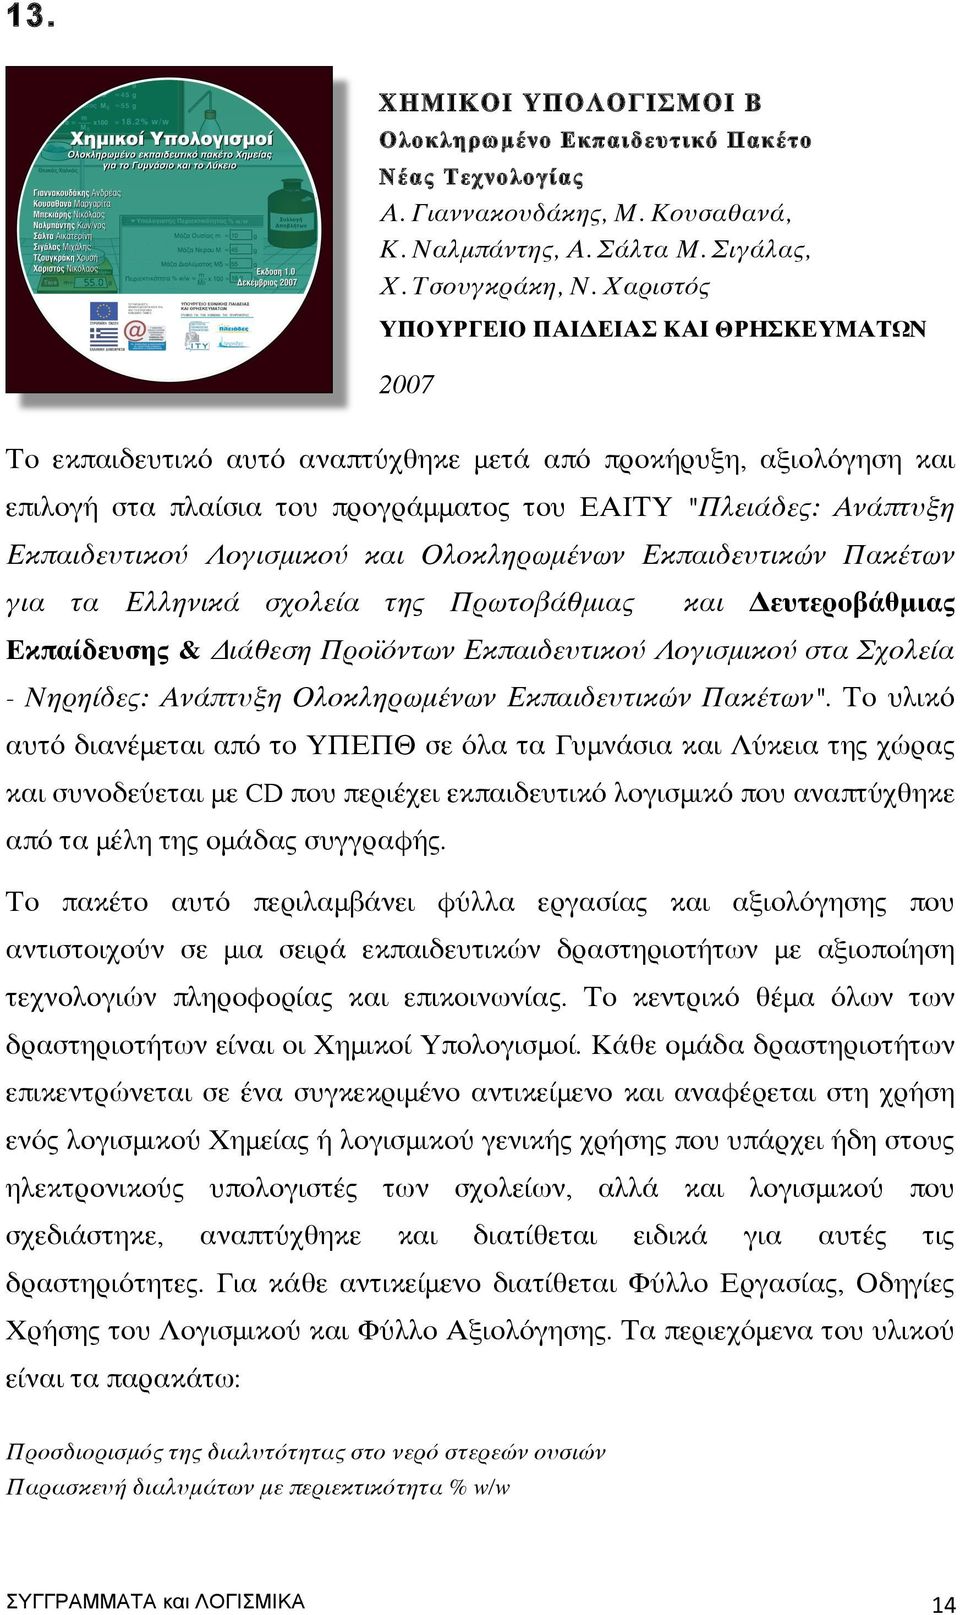 Λογισμικού και Ολοκληρωμένων Εκπαιδευτικών Πακέτων για τα Ελληνικά σχολεία της Πρωτοβάθμιας και Δευτεροβάθμιας Εκπαίδευσης & Διάθεση Προϊόντων Εκπαιδευτικού Λογισμικού στα Σχολεία - Νηρηίδες: